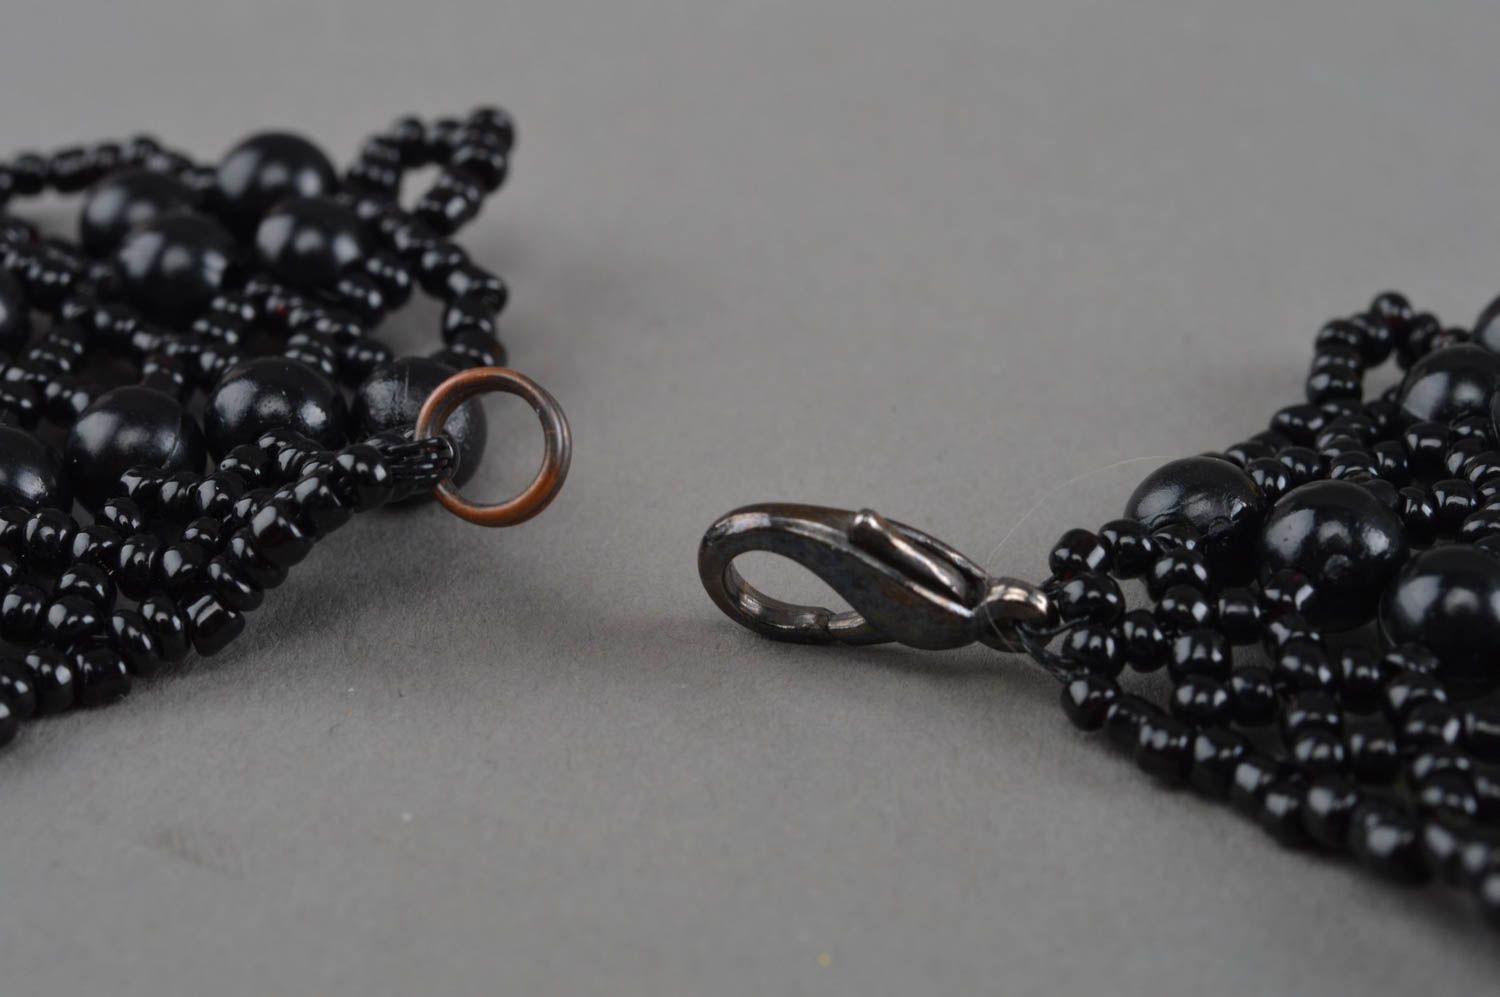 Ожерелье из бисера и бусин ручной работы черного цвета красивое ажурное  фото 4